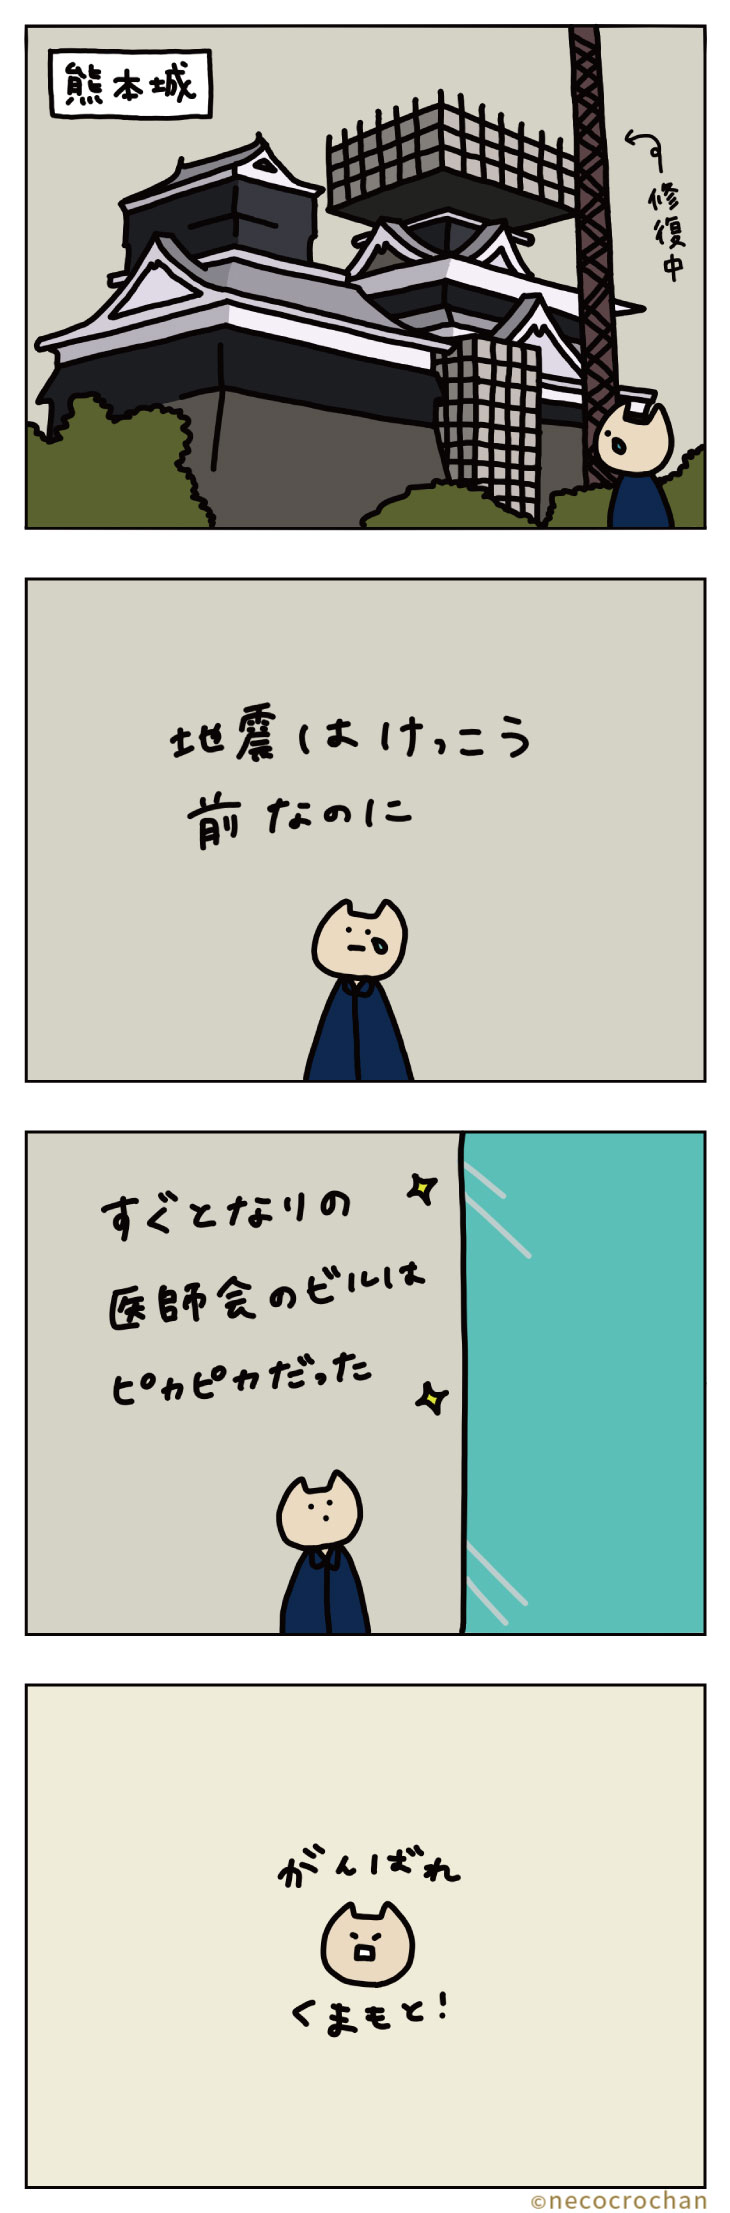 4コマ漫画ねこくろにっき「旅行〜熊本城〜」